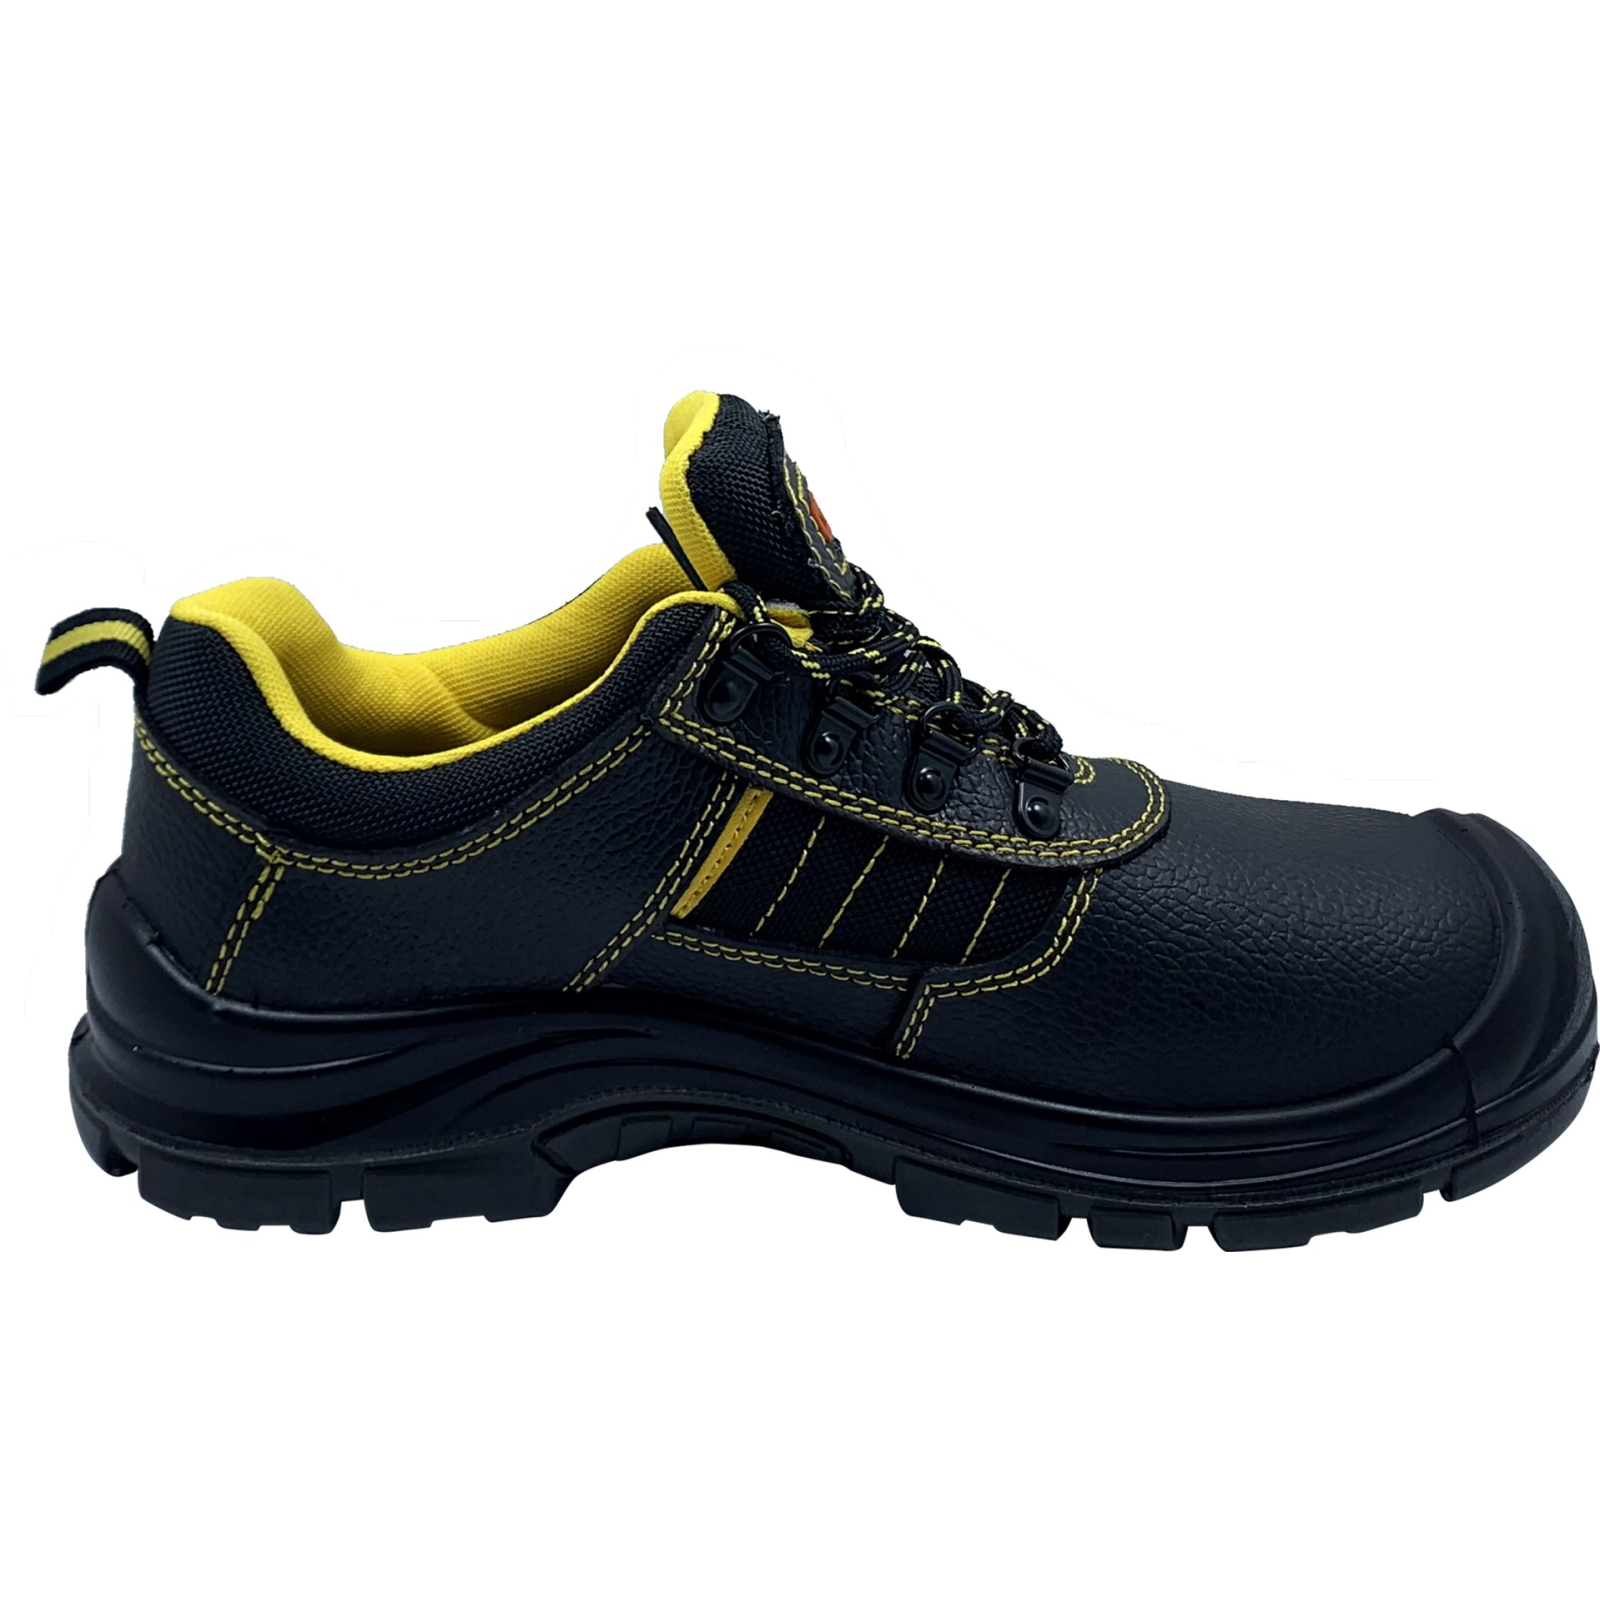 Ботинки рабочие GTM SM-078 мет. носок, р.40 с желтыми вставками (SM-078-40) изображение 2